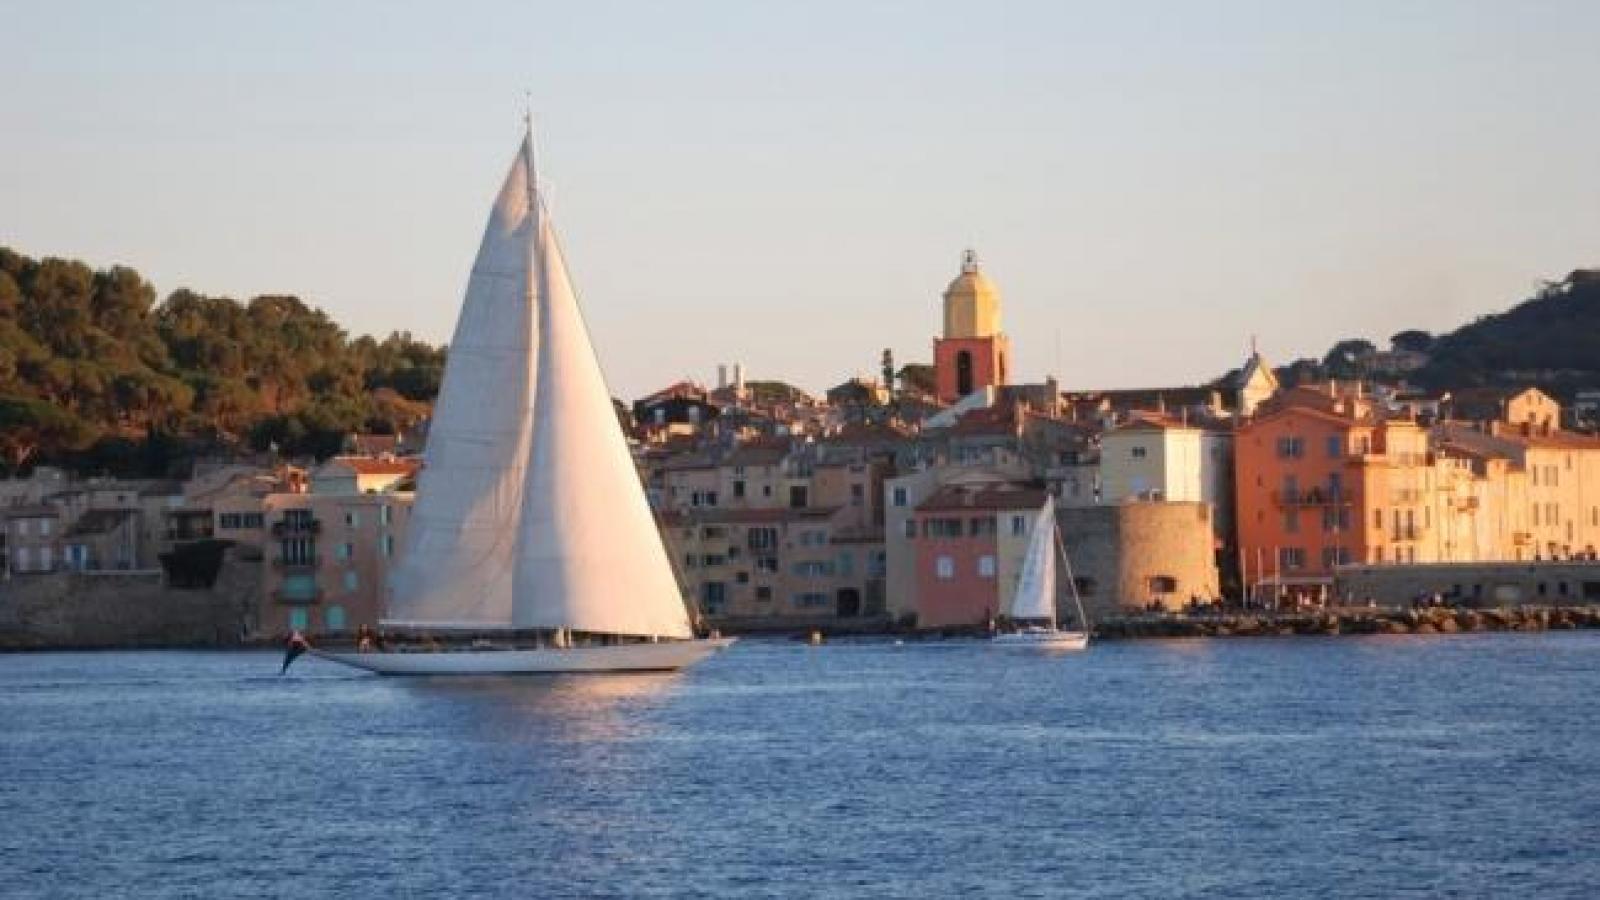 Saint Tropez offers visitors exceptional choice